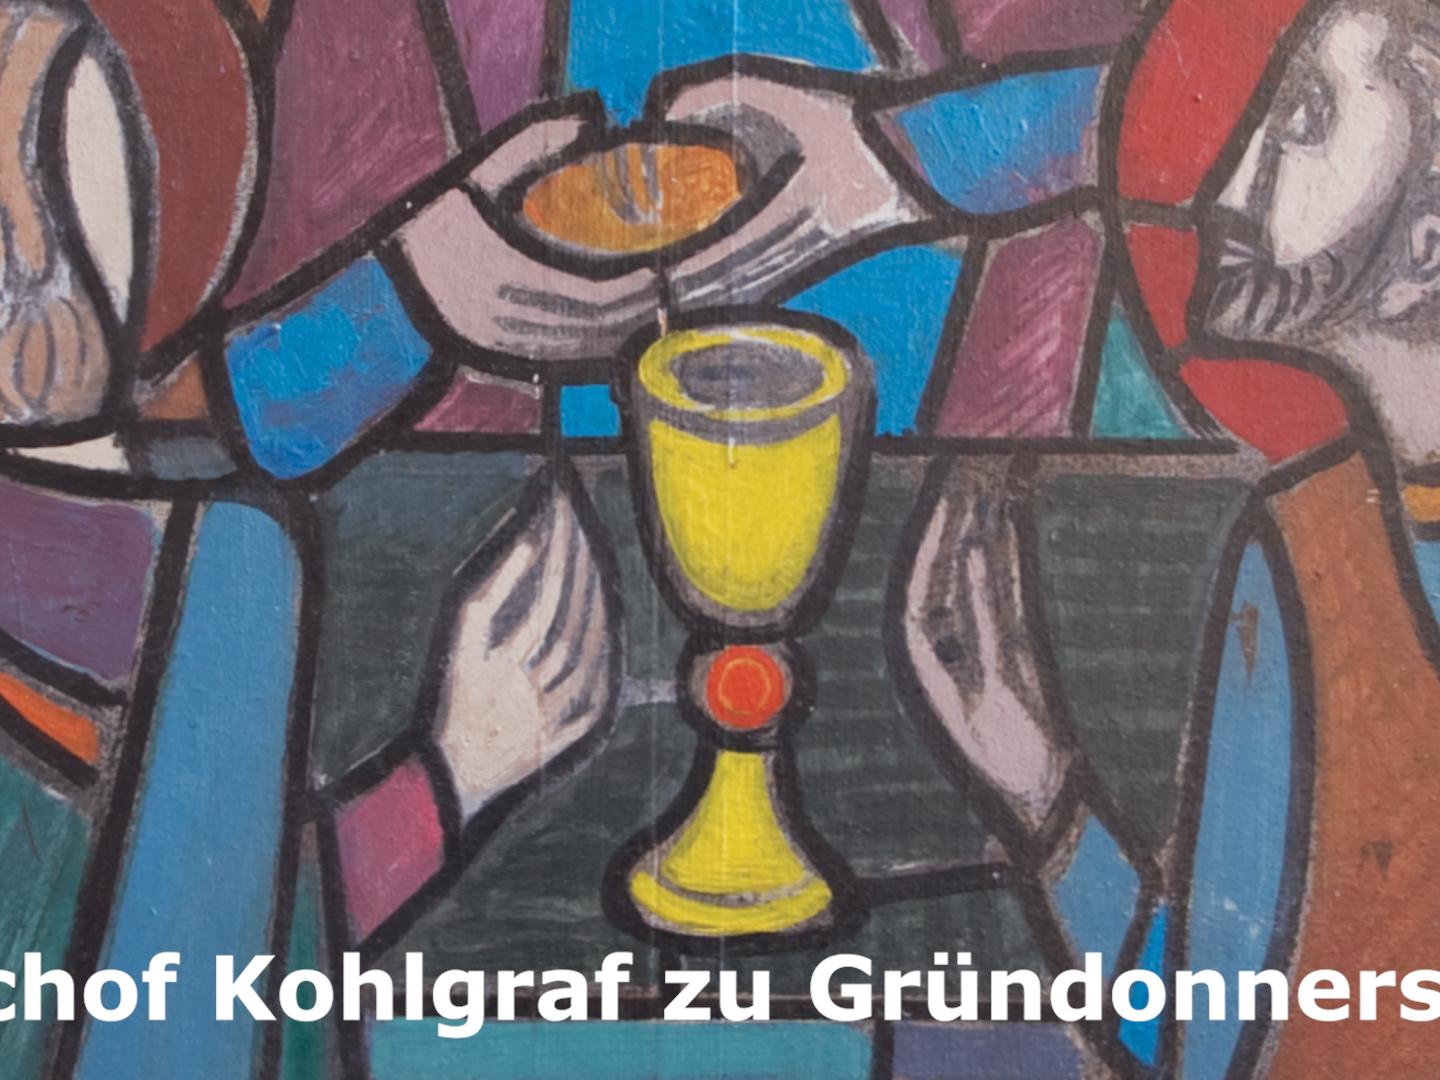 Predigt von Bischof Peter Kohlgraf zu Gründonnerstag 2020 (c) Bistum Mainz